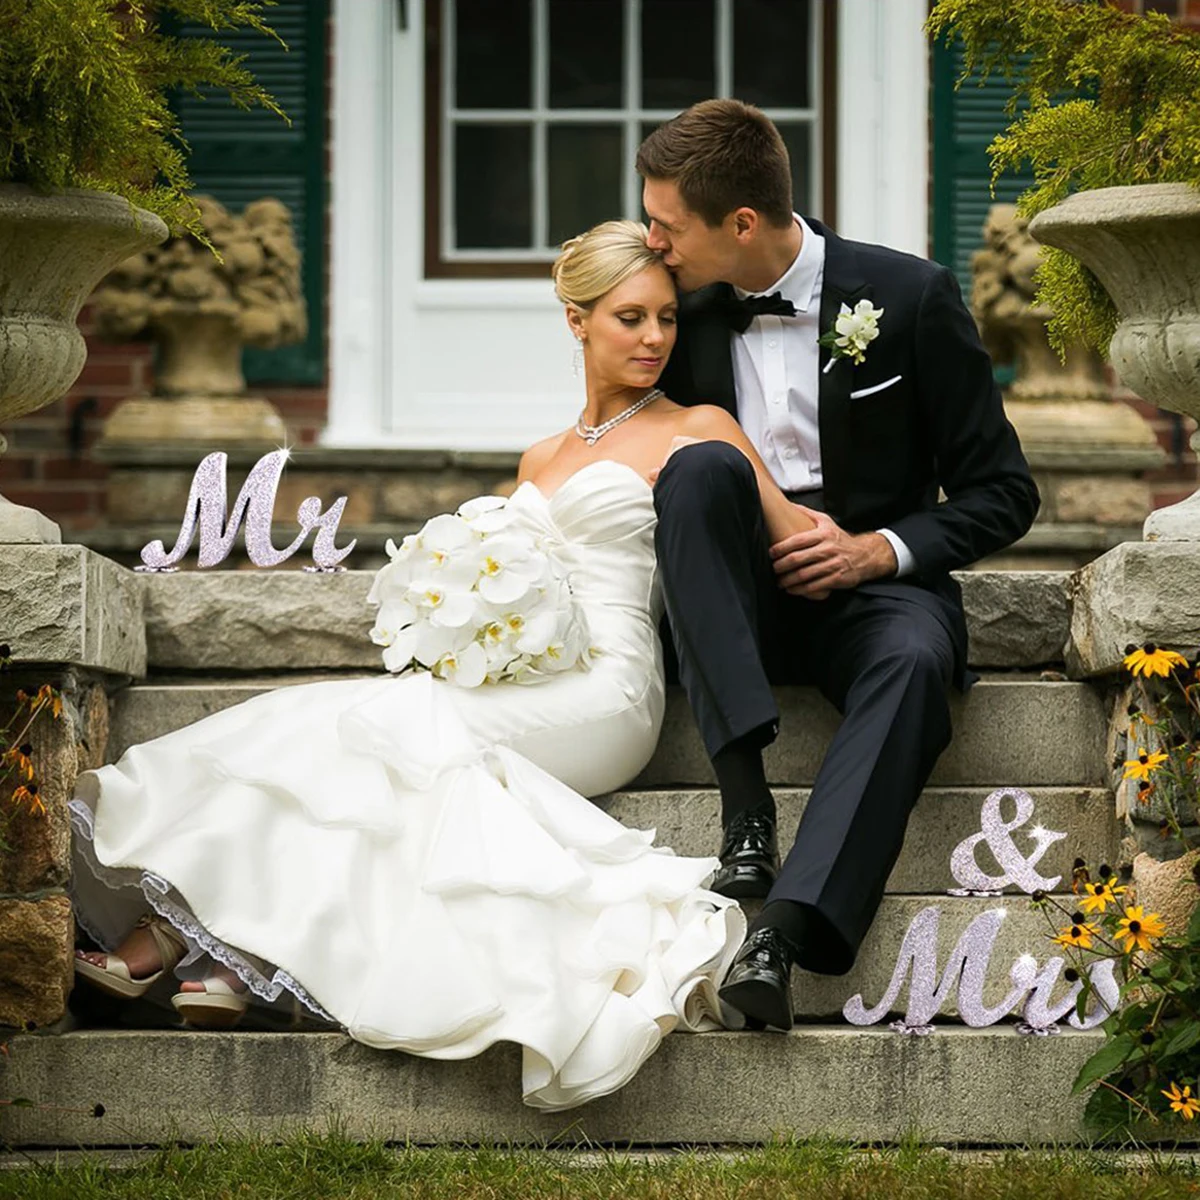 Блестки Mr& Mrs Деревянные Буквы Знак свадебный подарок для украшения свадебного стола(серебро